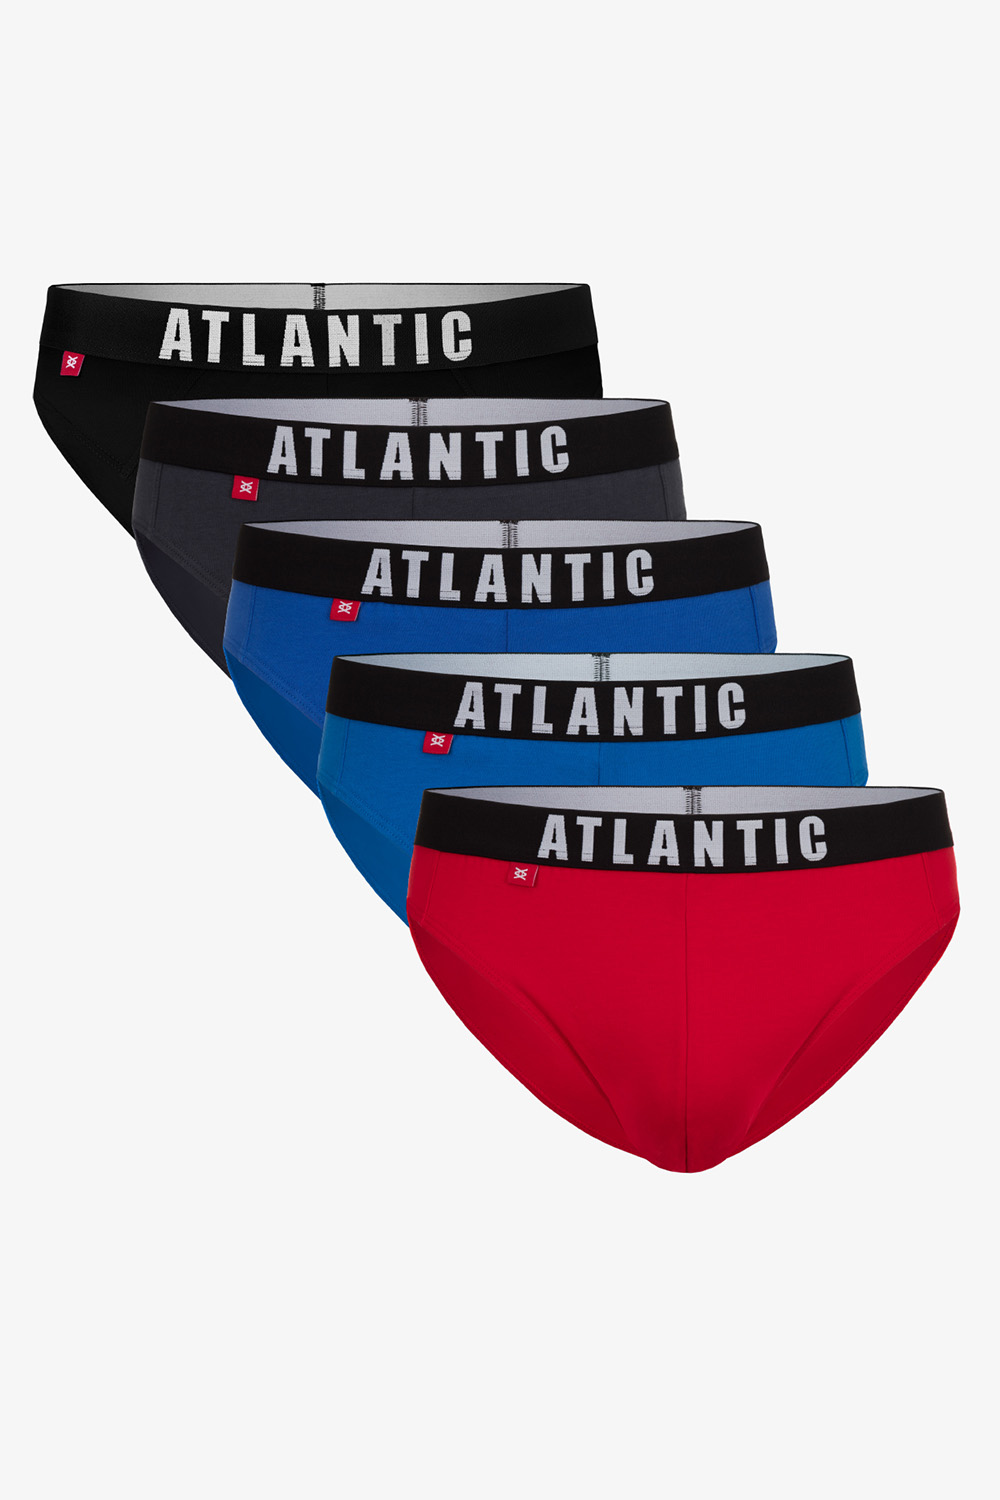 Atlantic 5SMP-004 Solid Majtki slipy, grafit/czarny/czerwony/niebieski/turkus